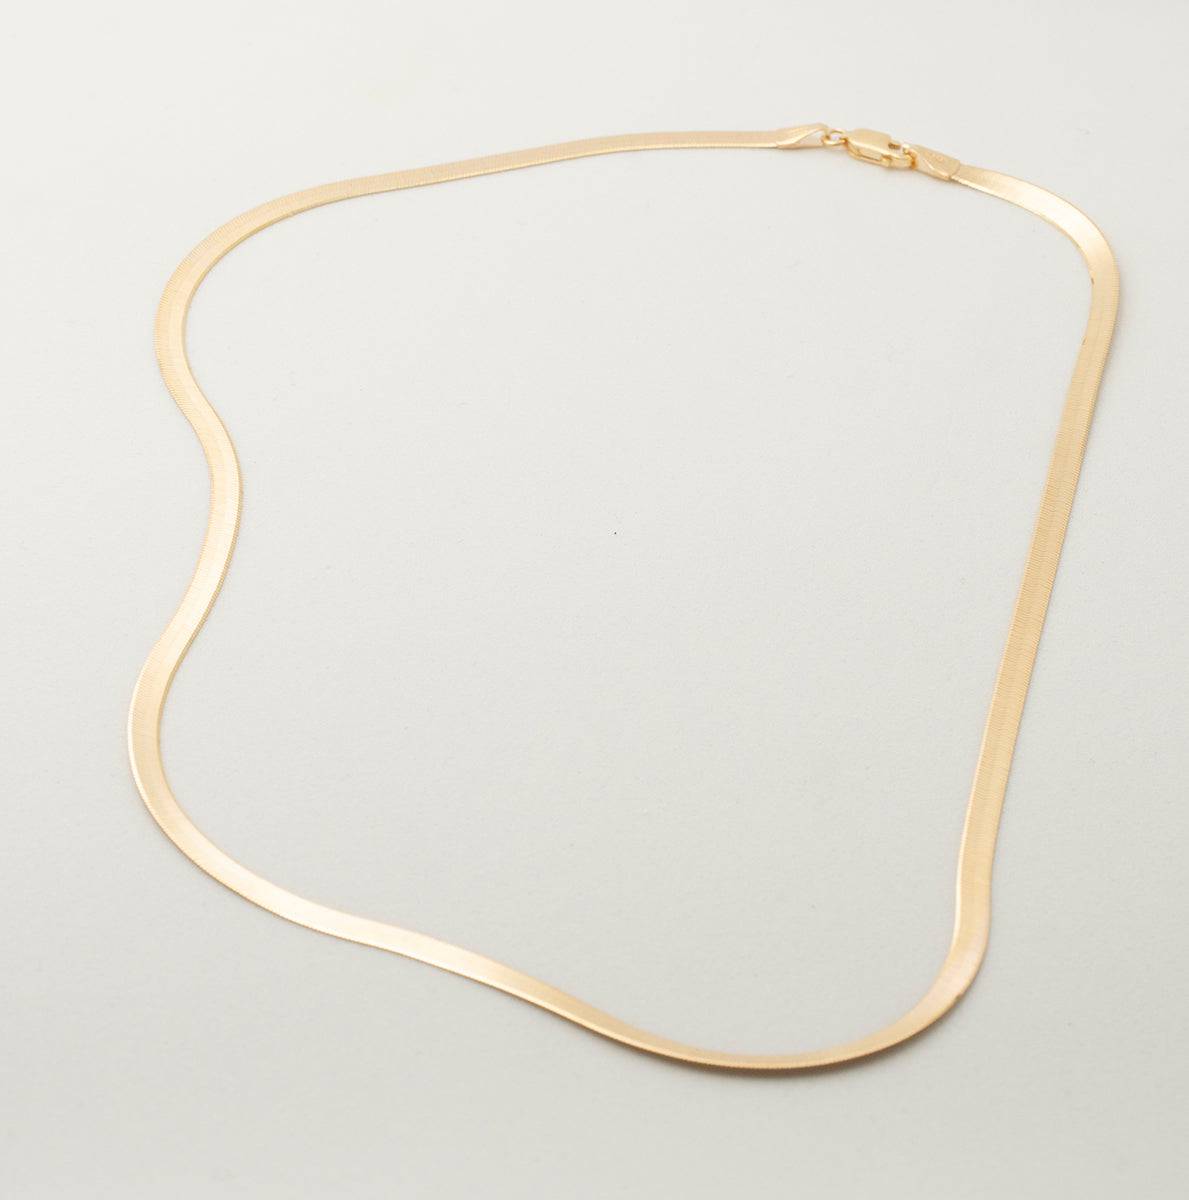 Necklace 2mm Slim Herringbone Chain - More than this - Ileana Makri store